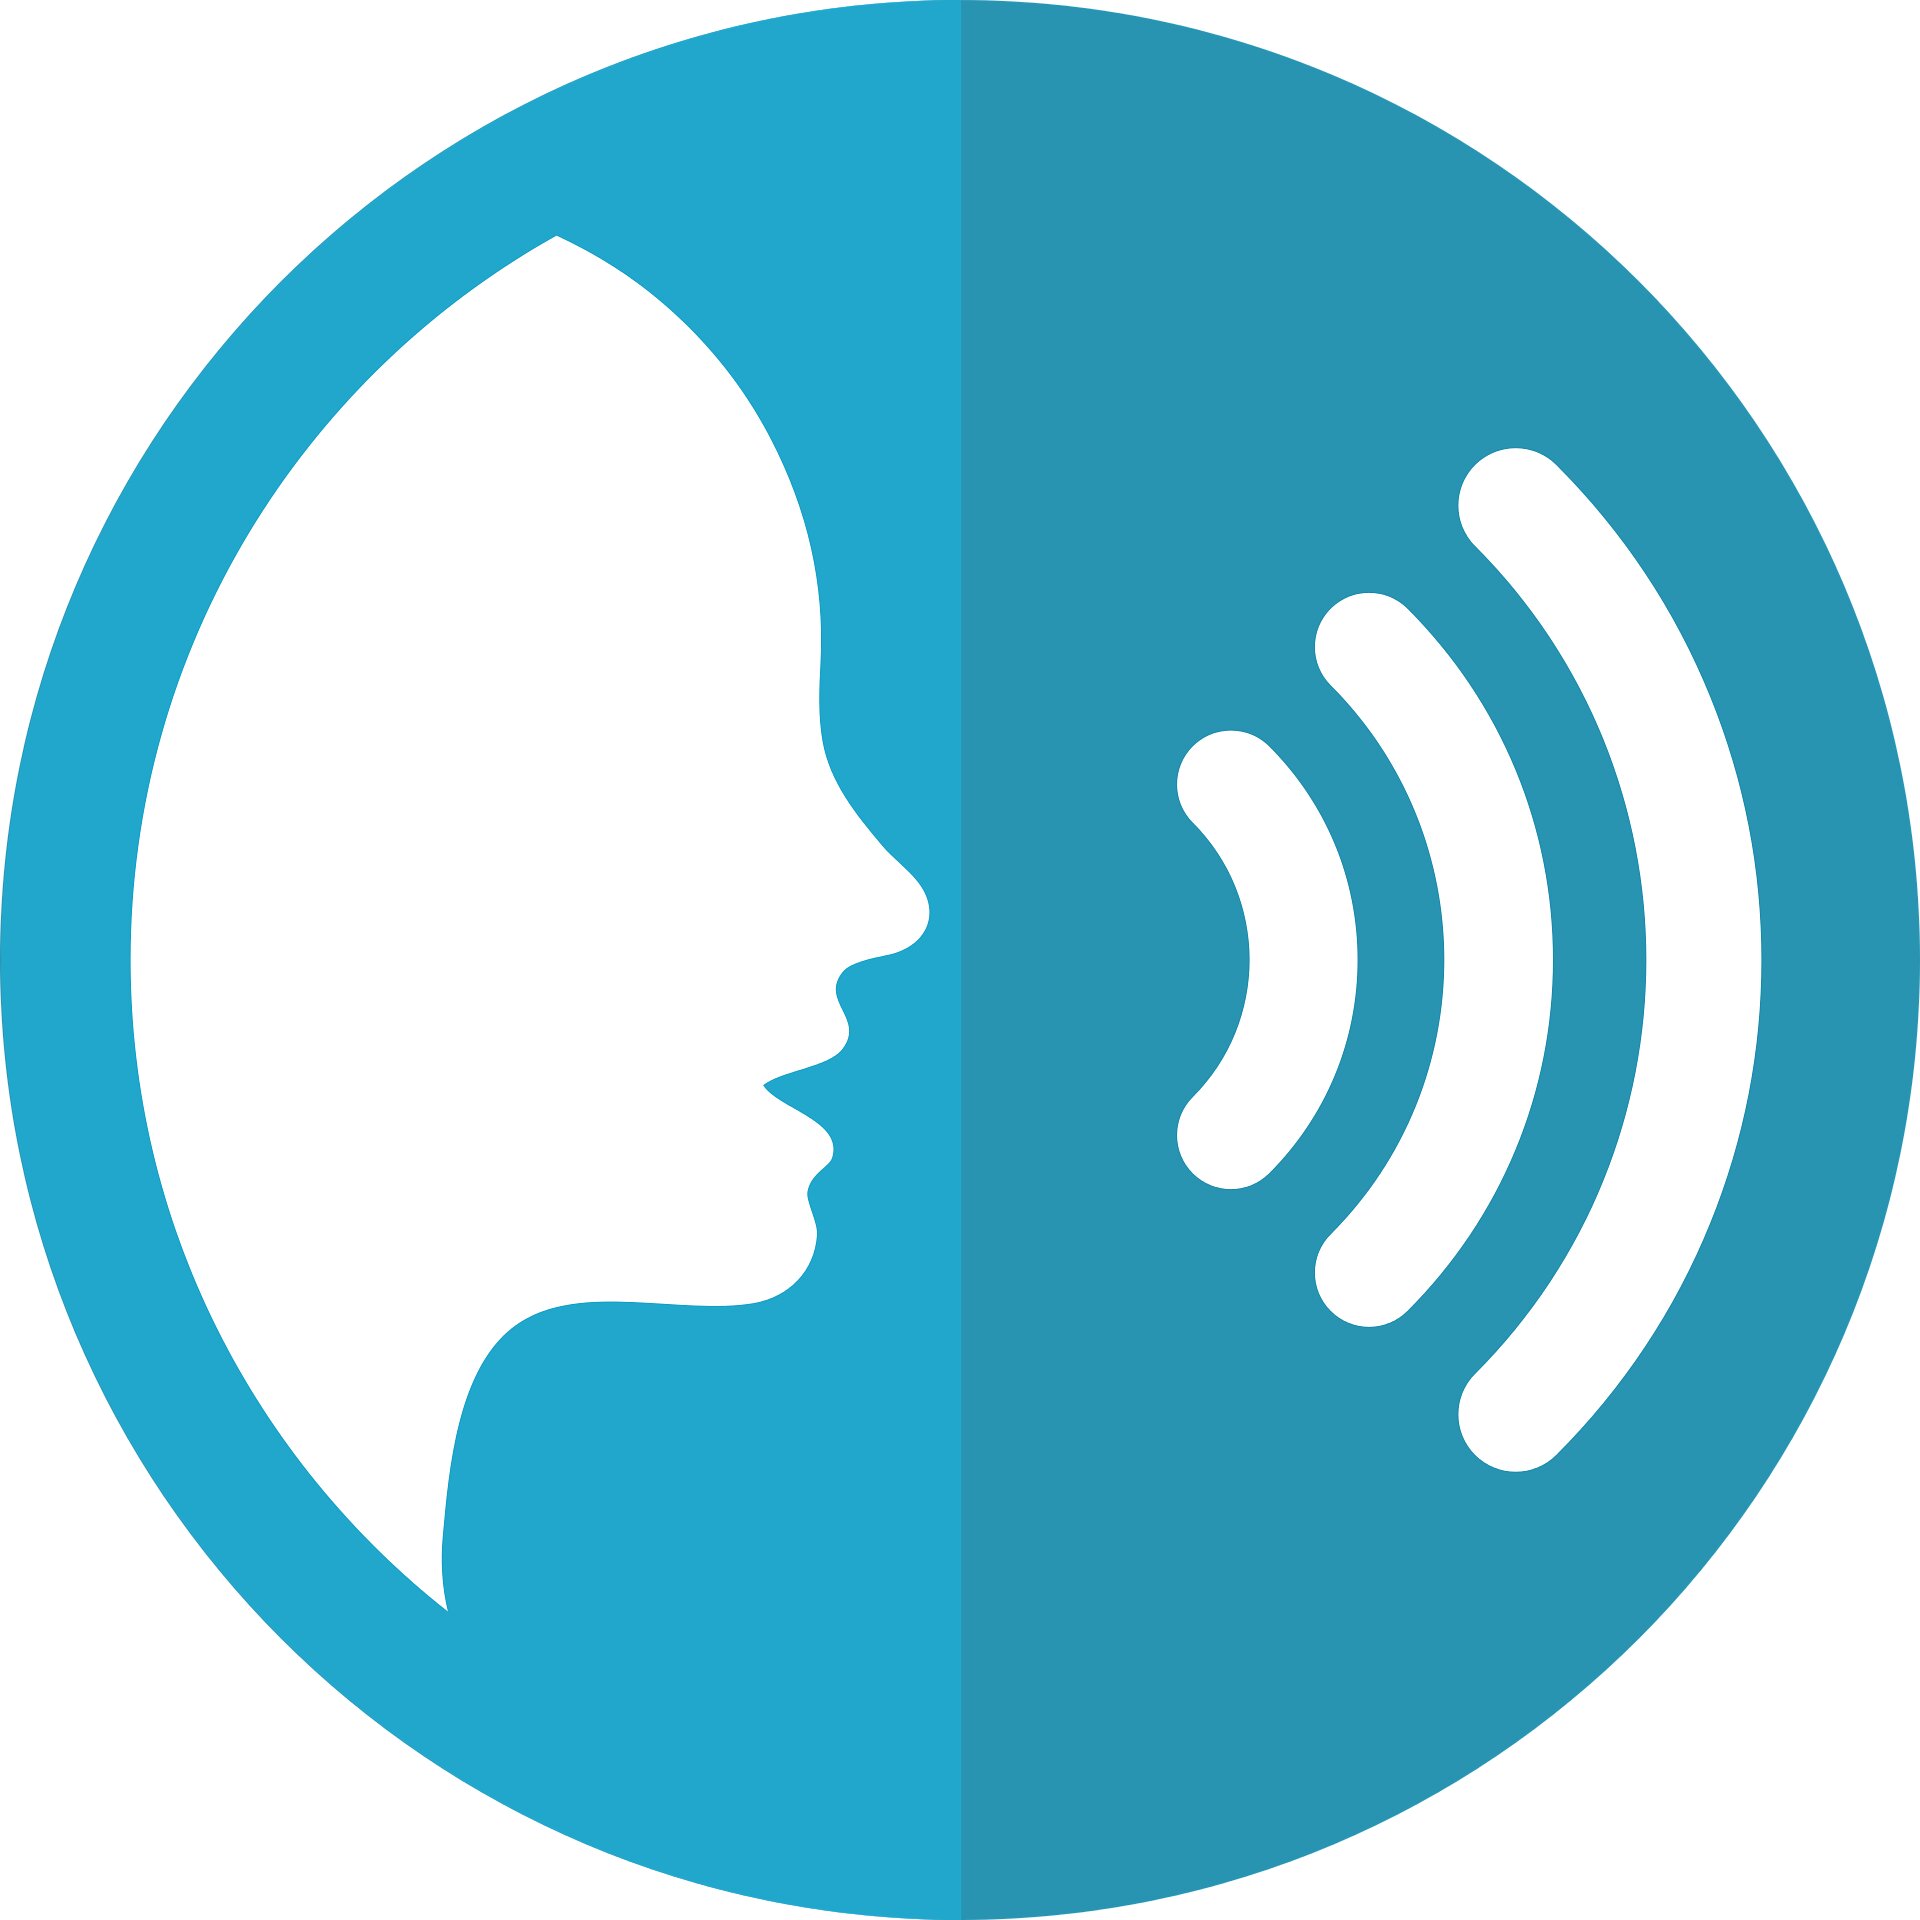 Examining factors that determine creaky voice use